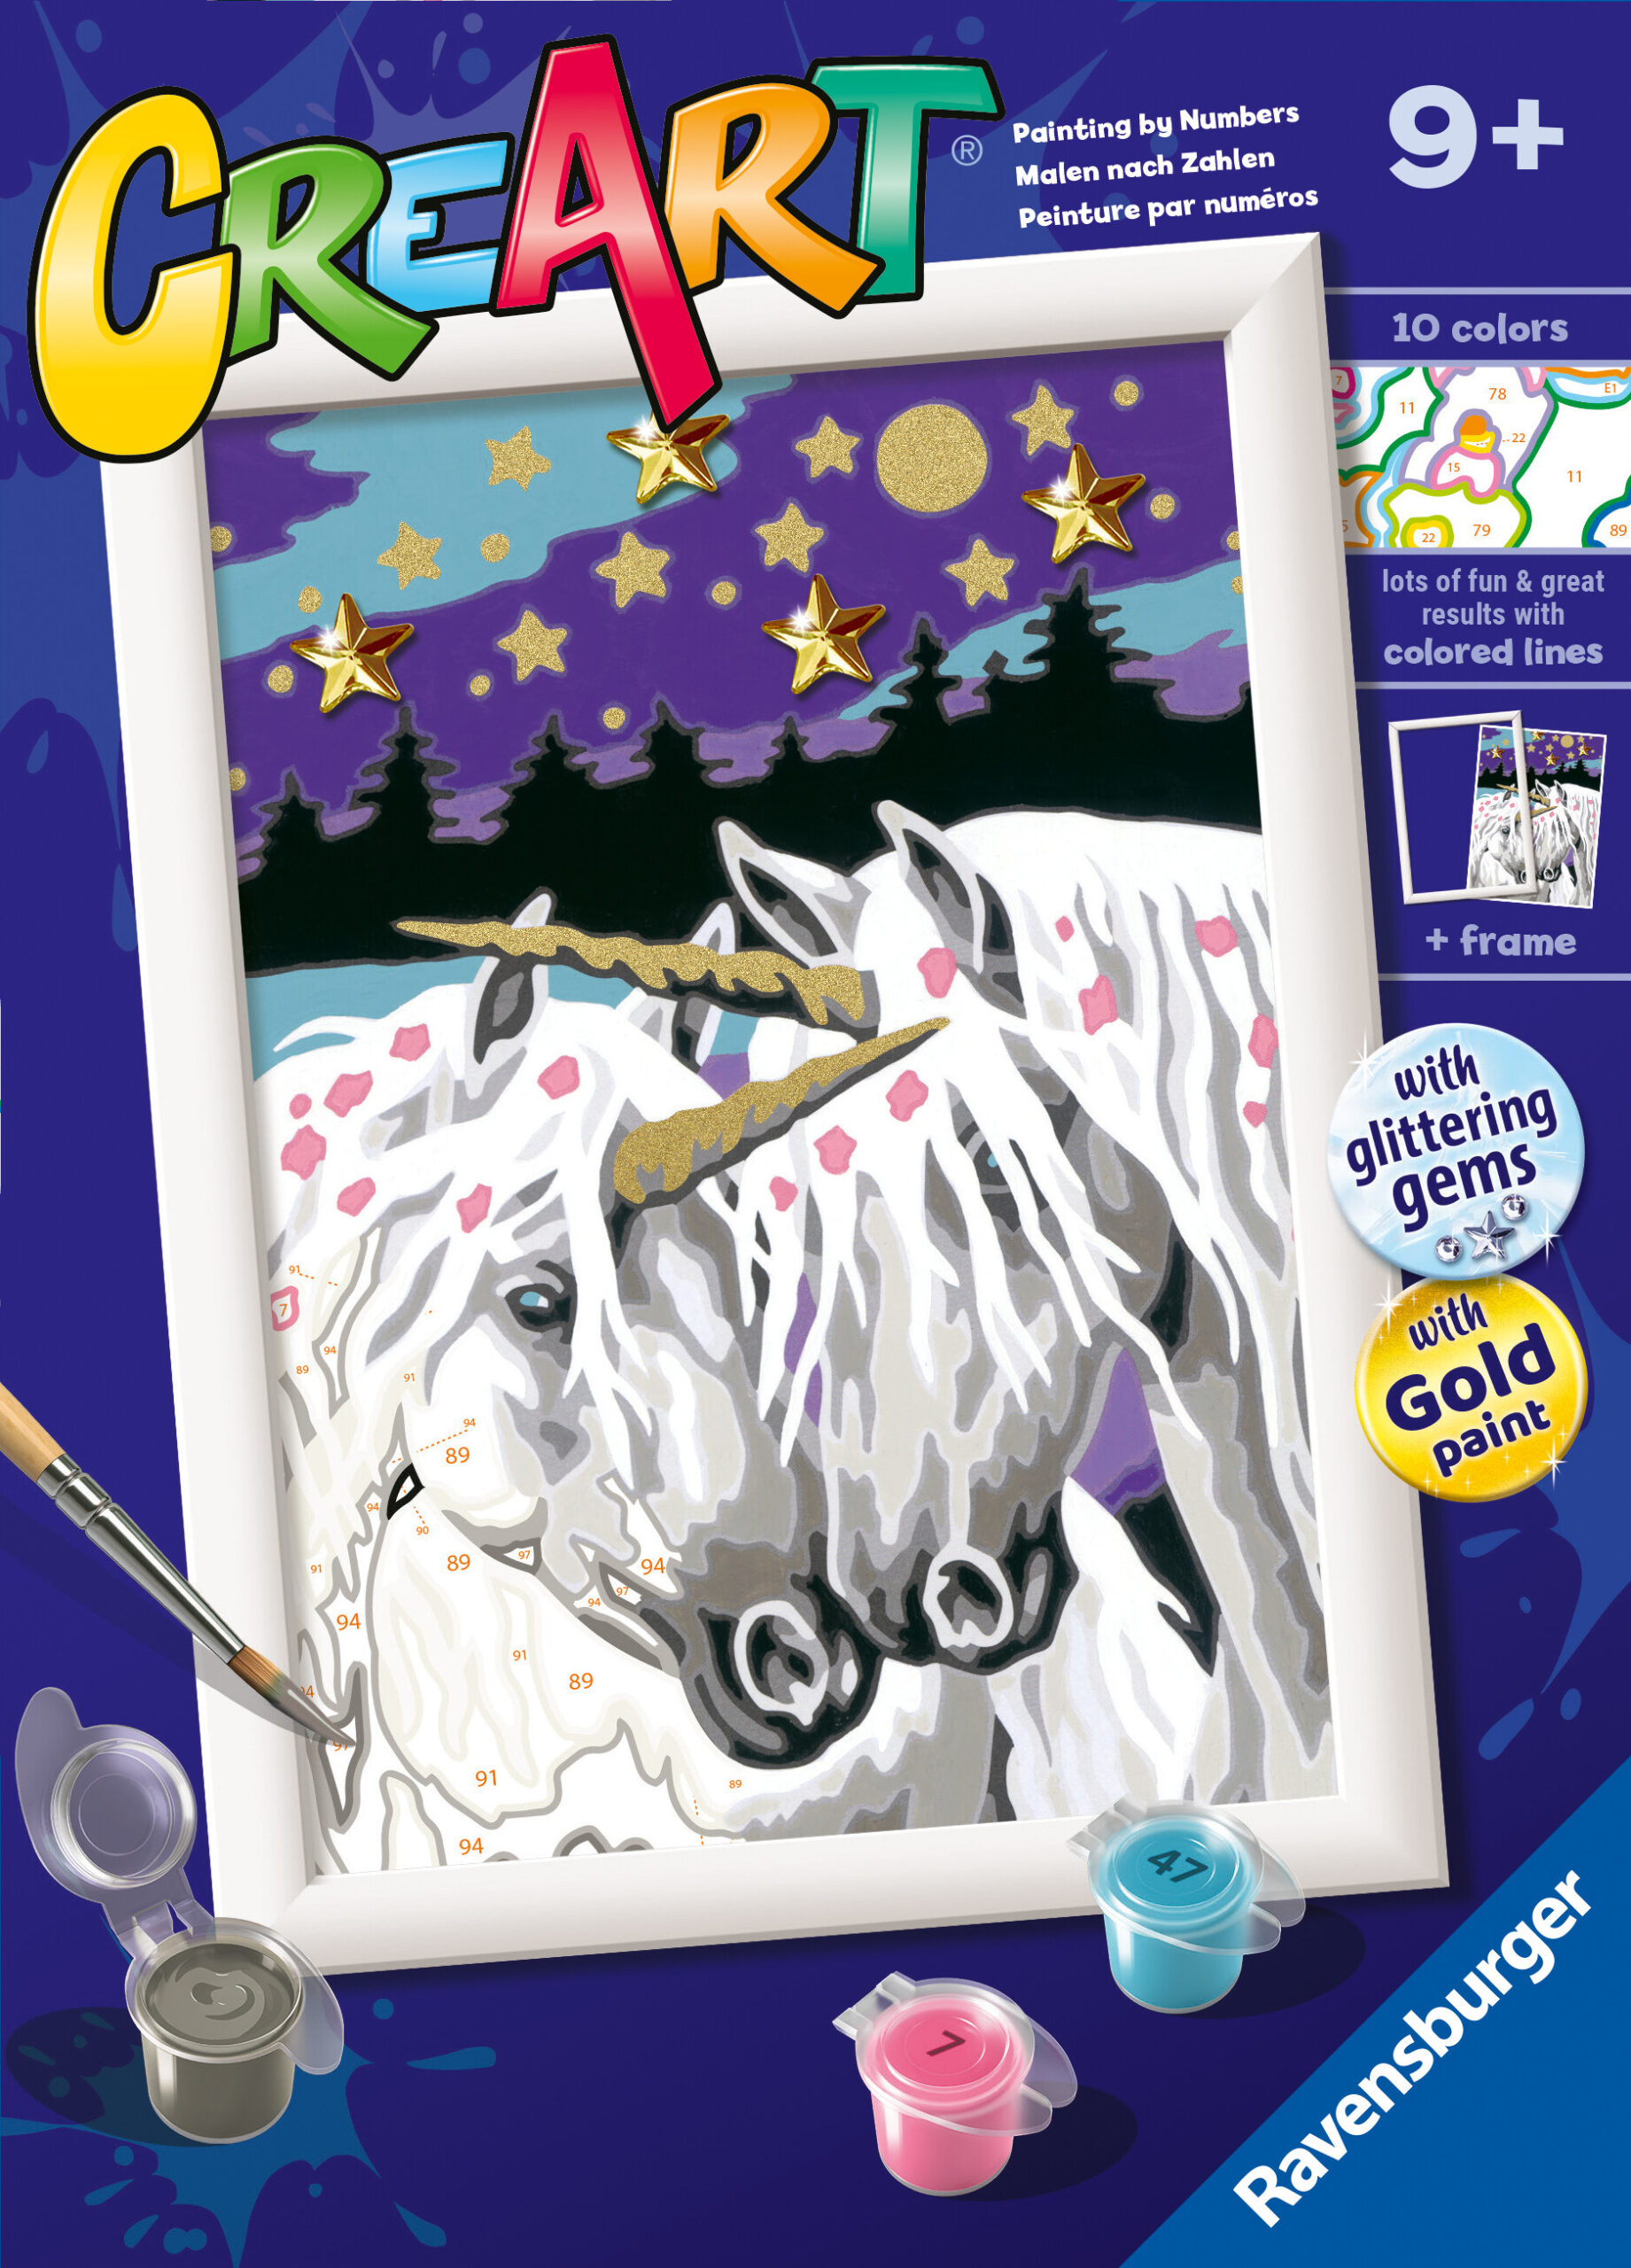 Ravensburger - creart serie e: unicorni innamorati, kit per dipingere con i numeri, contiene una tavola prestampata, pennello, colori e accessori, gioco creativo per bambini 9+ anni - RAVENSBURGER